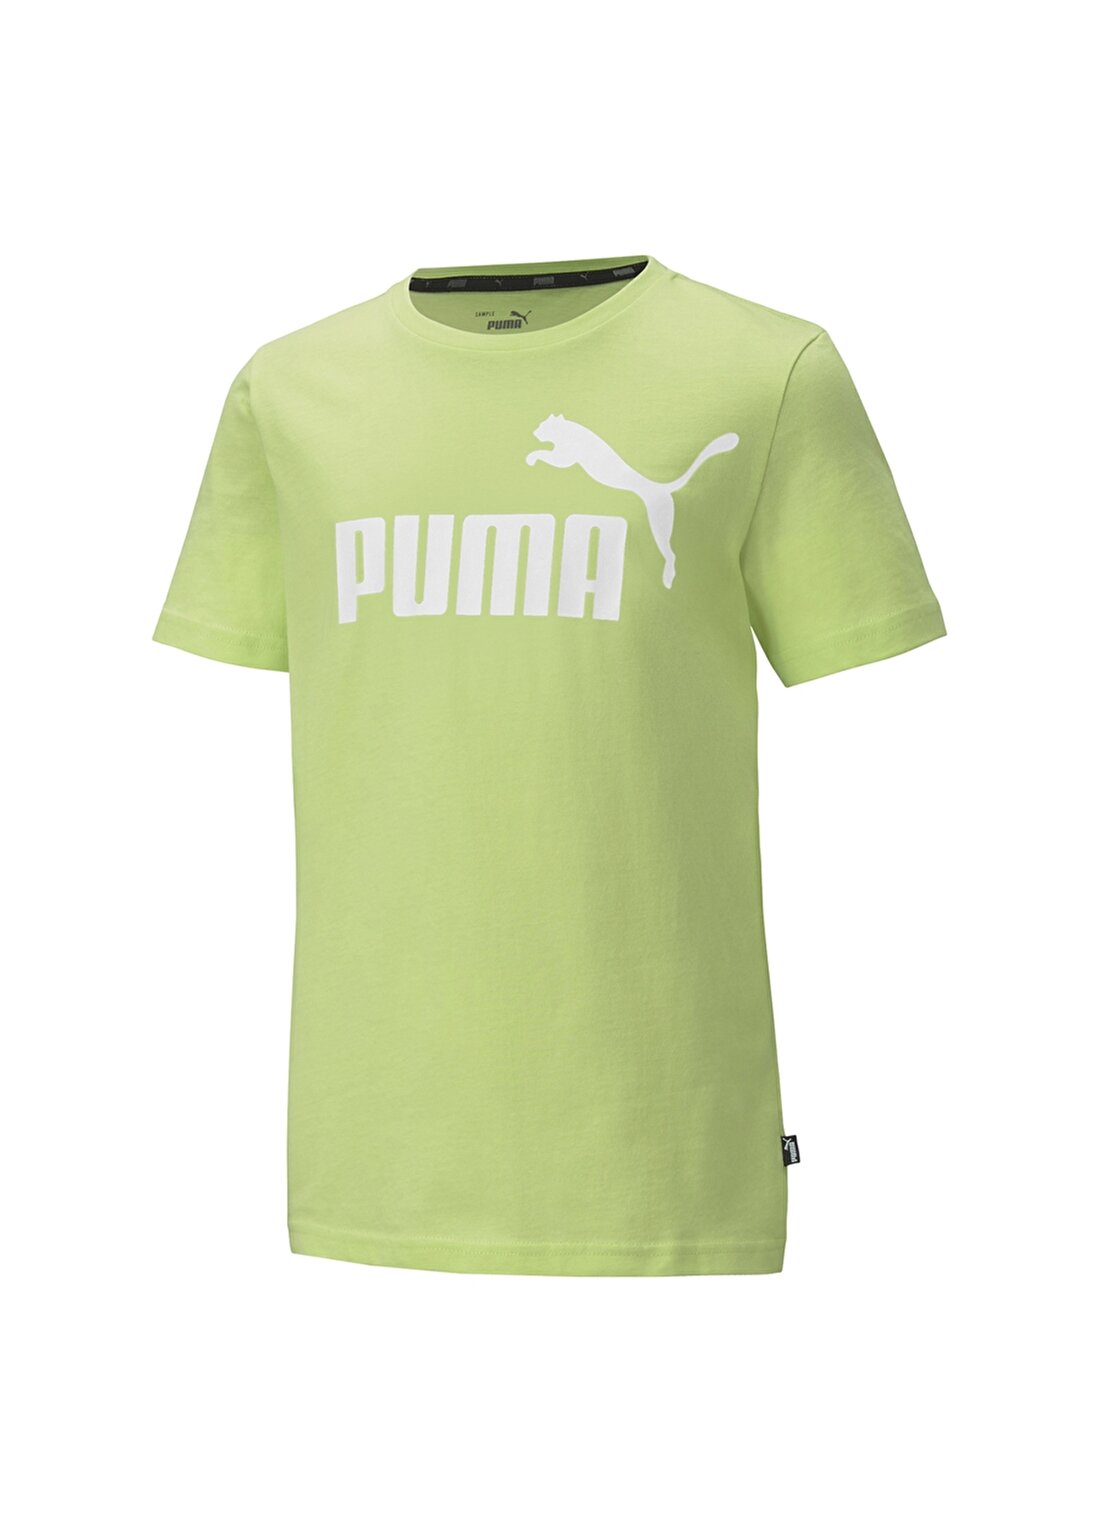 Puma Erkek Çocuk Yeşil Bisiklet Yaka T-Shirt